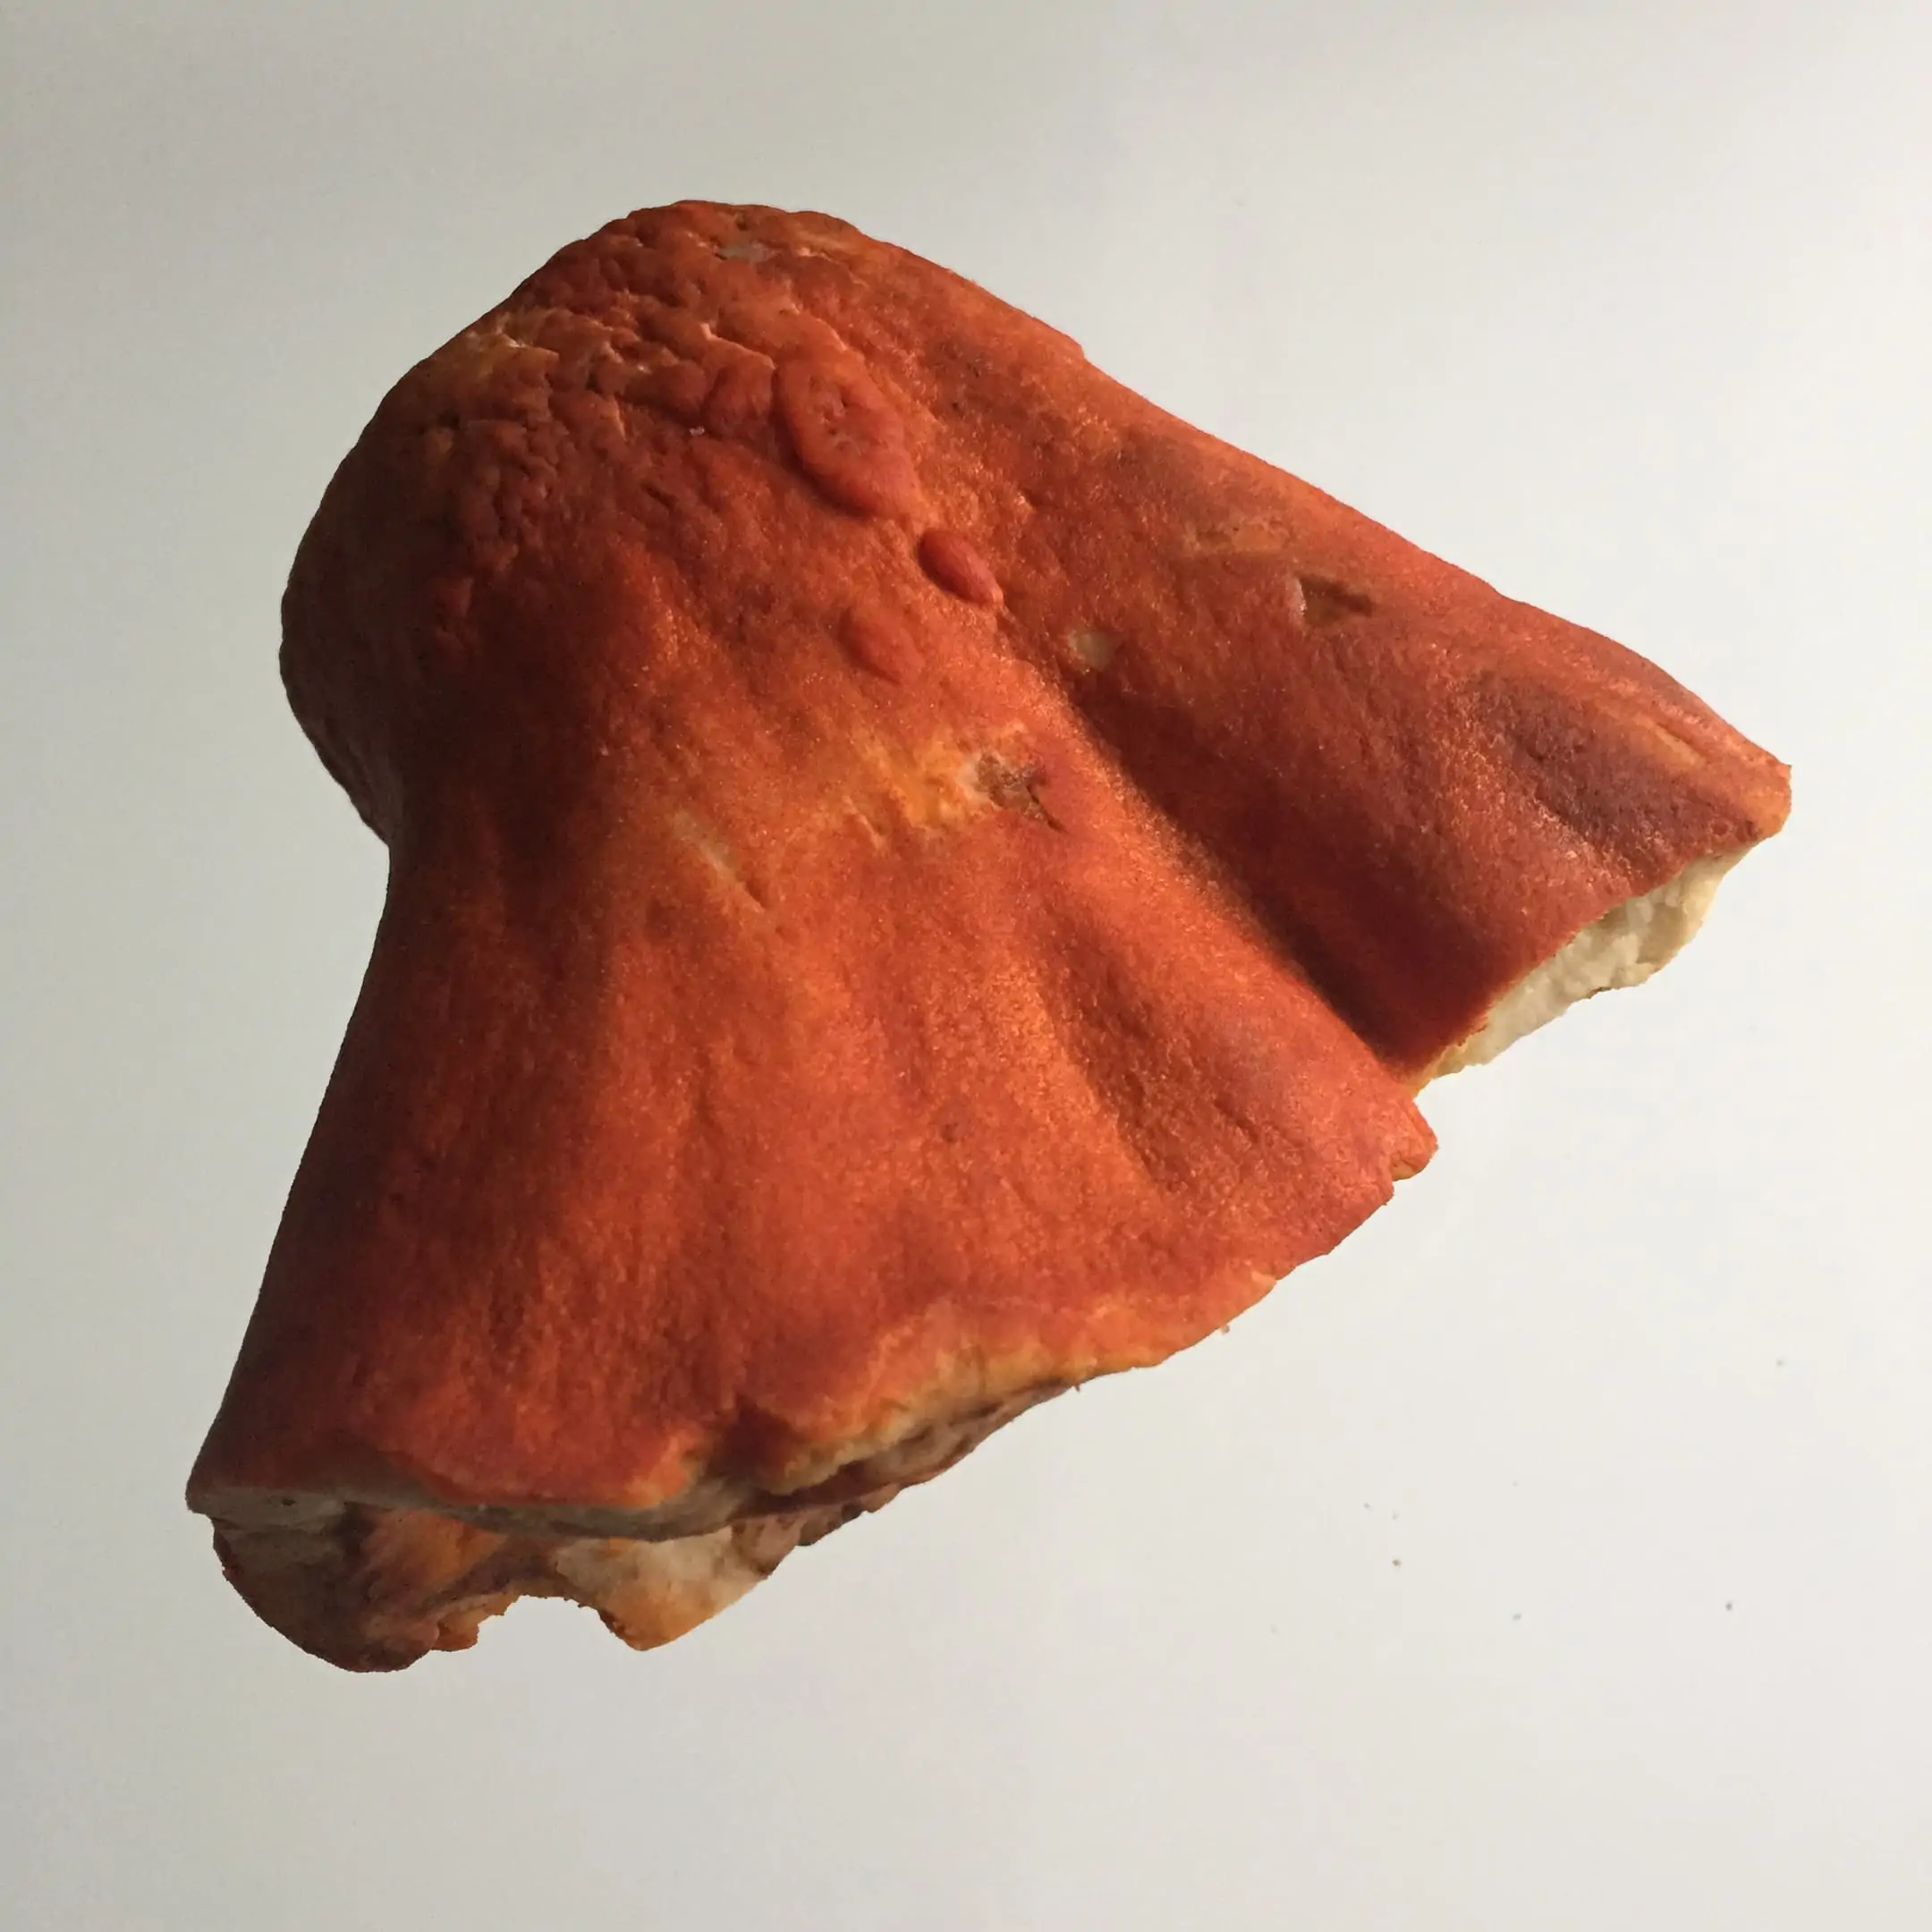 Lobster mushroom